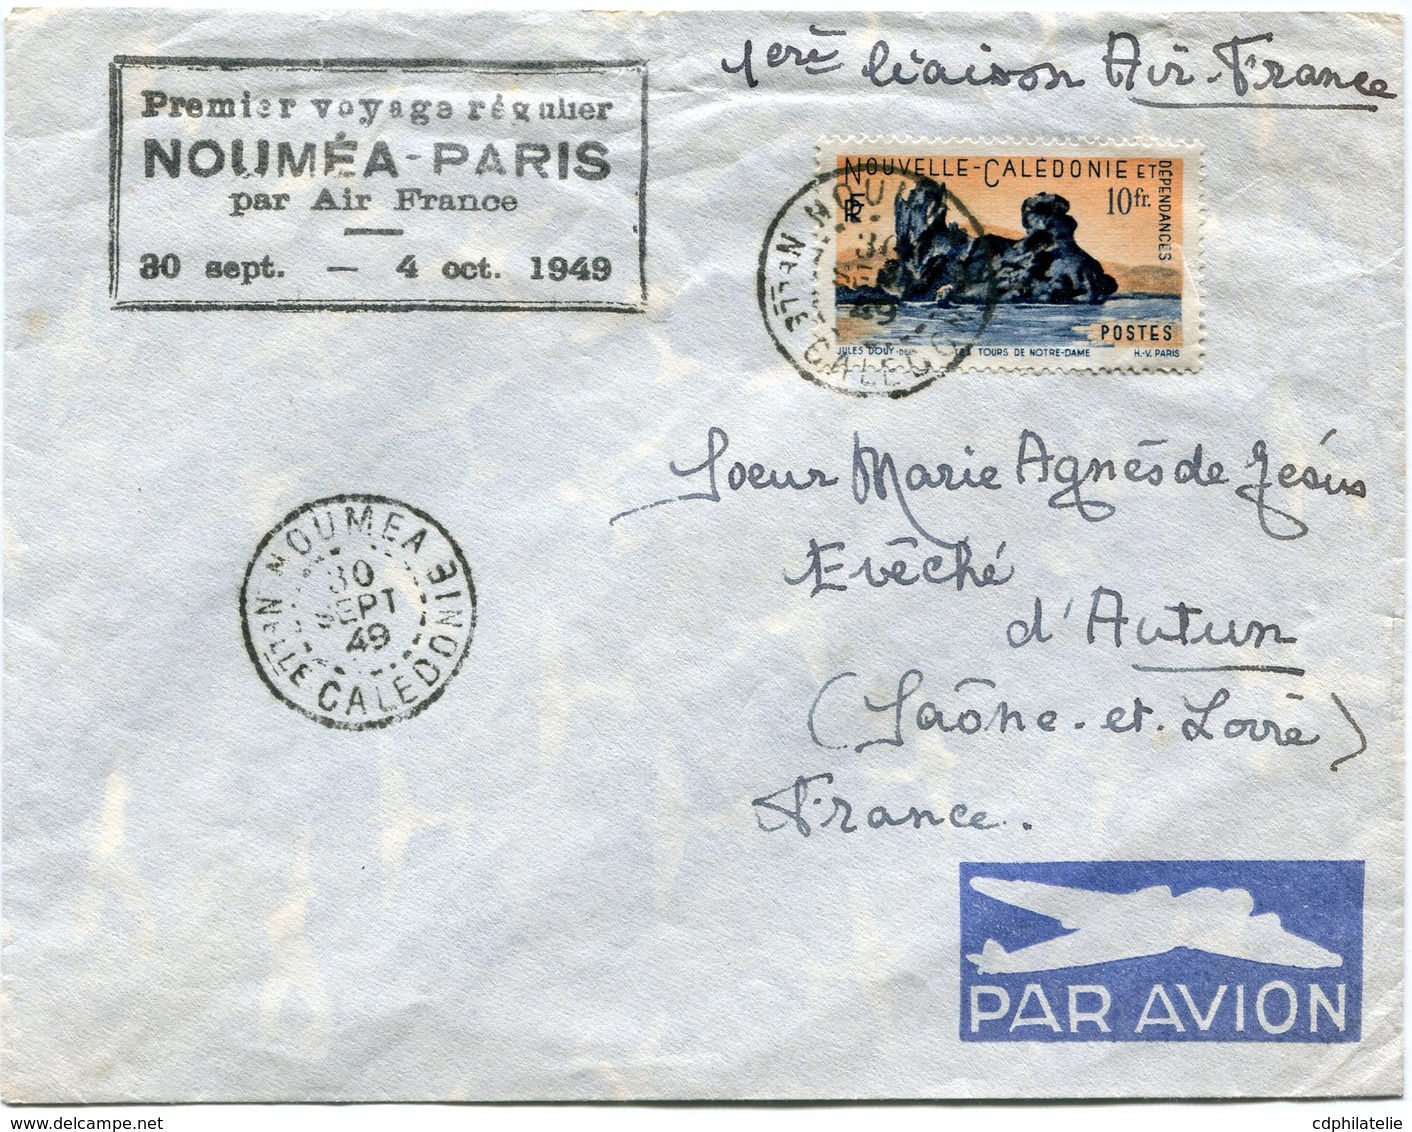 NOUVELLE-CALEDONIE LETTRE PAR AVION AVEC CACHET "PREMIER VOYAGE REGULIER NOUMEA-PARIS PAR AIR FRANCE 30 SEPT-4 OCT 1949" - Lettres & Documents